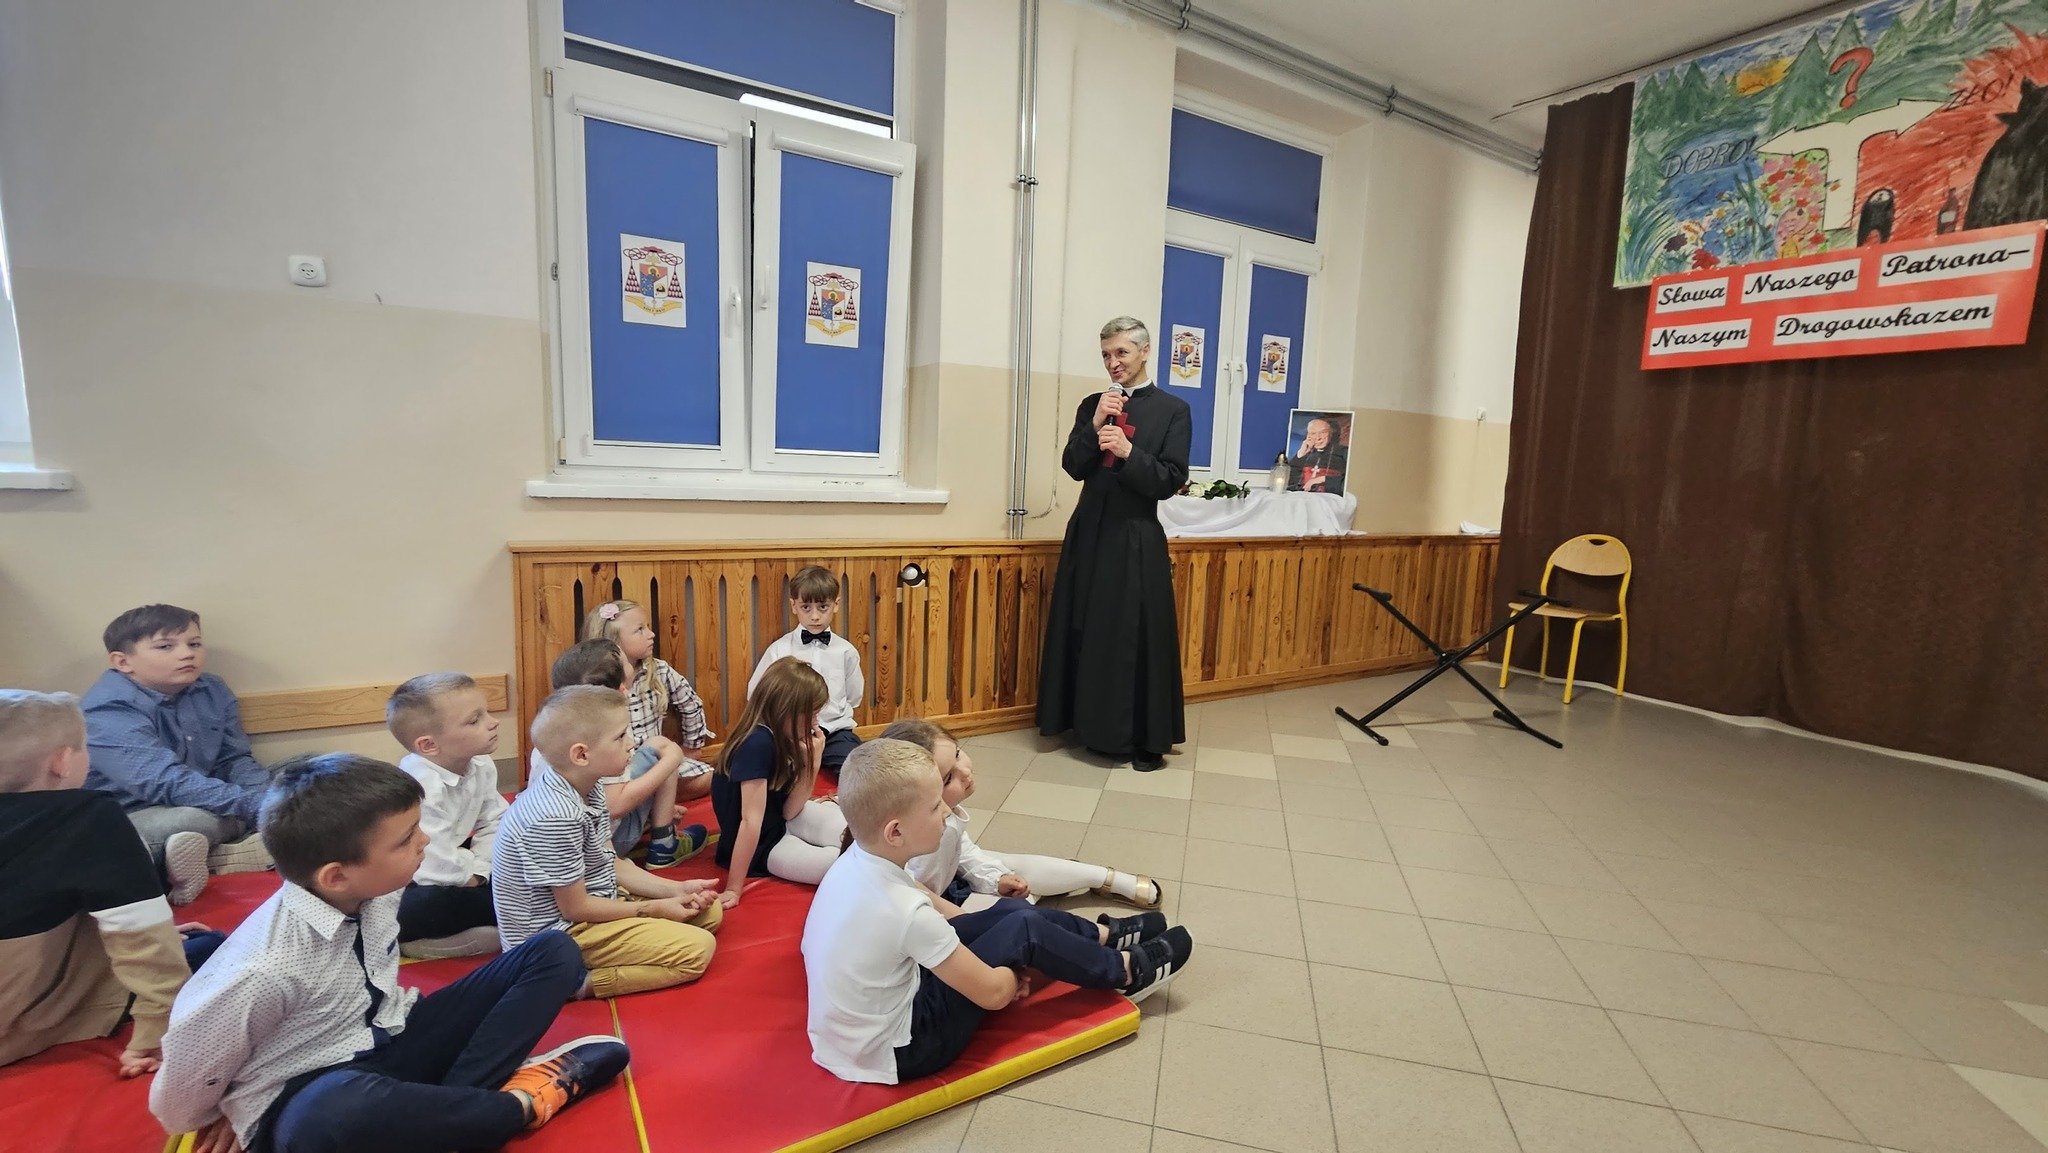 Dziękuję Szkole Podstawowej im. bł. ks. Prymasa Stefana Wyszyńskiego w Głusku za wspólną modlitwę w kościele i piękne przedstawienie w szkole.